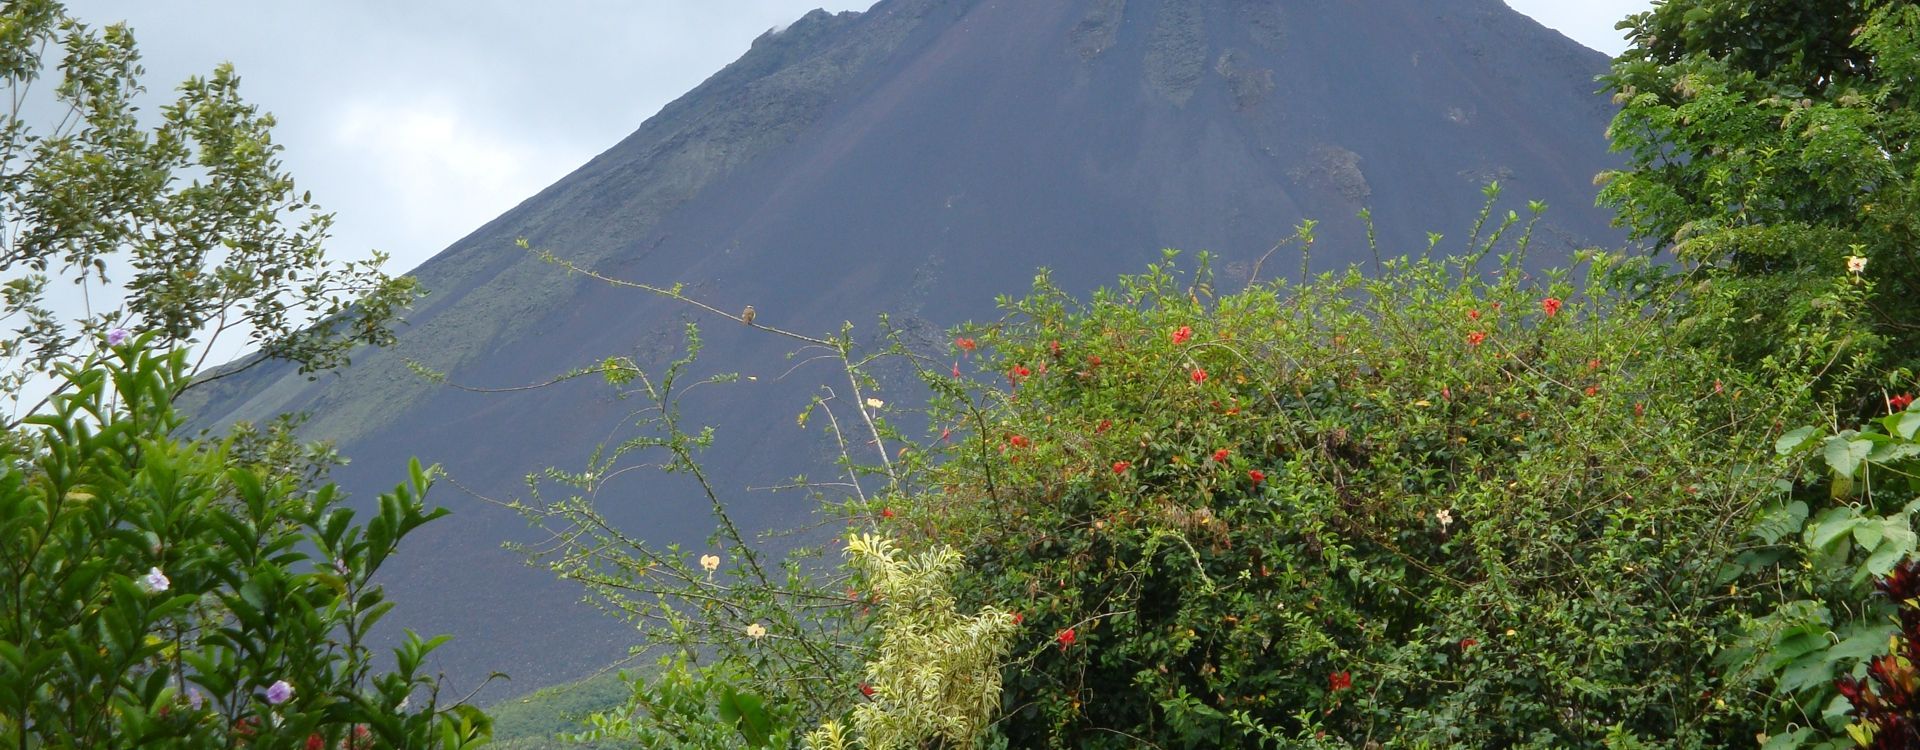 il-viaggio-travel-costa-rica-arenal volcano.JPG